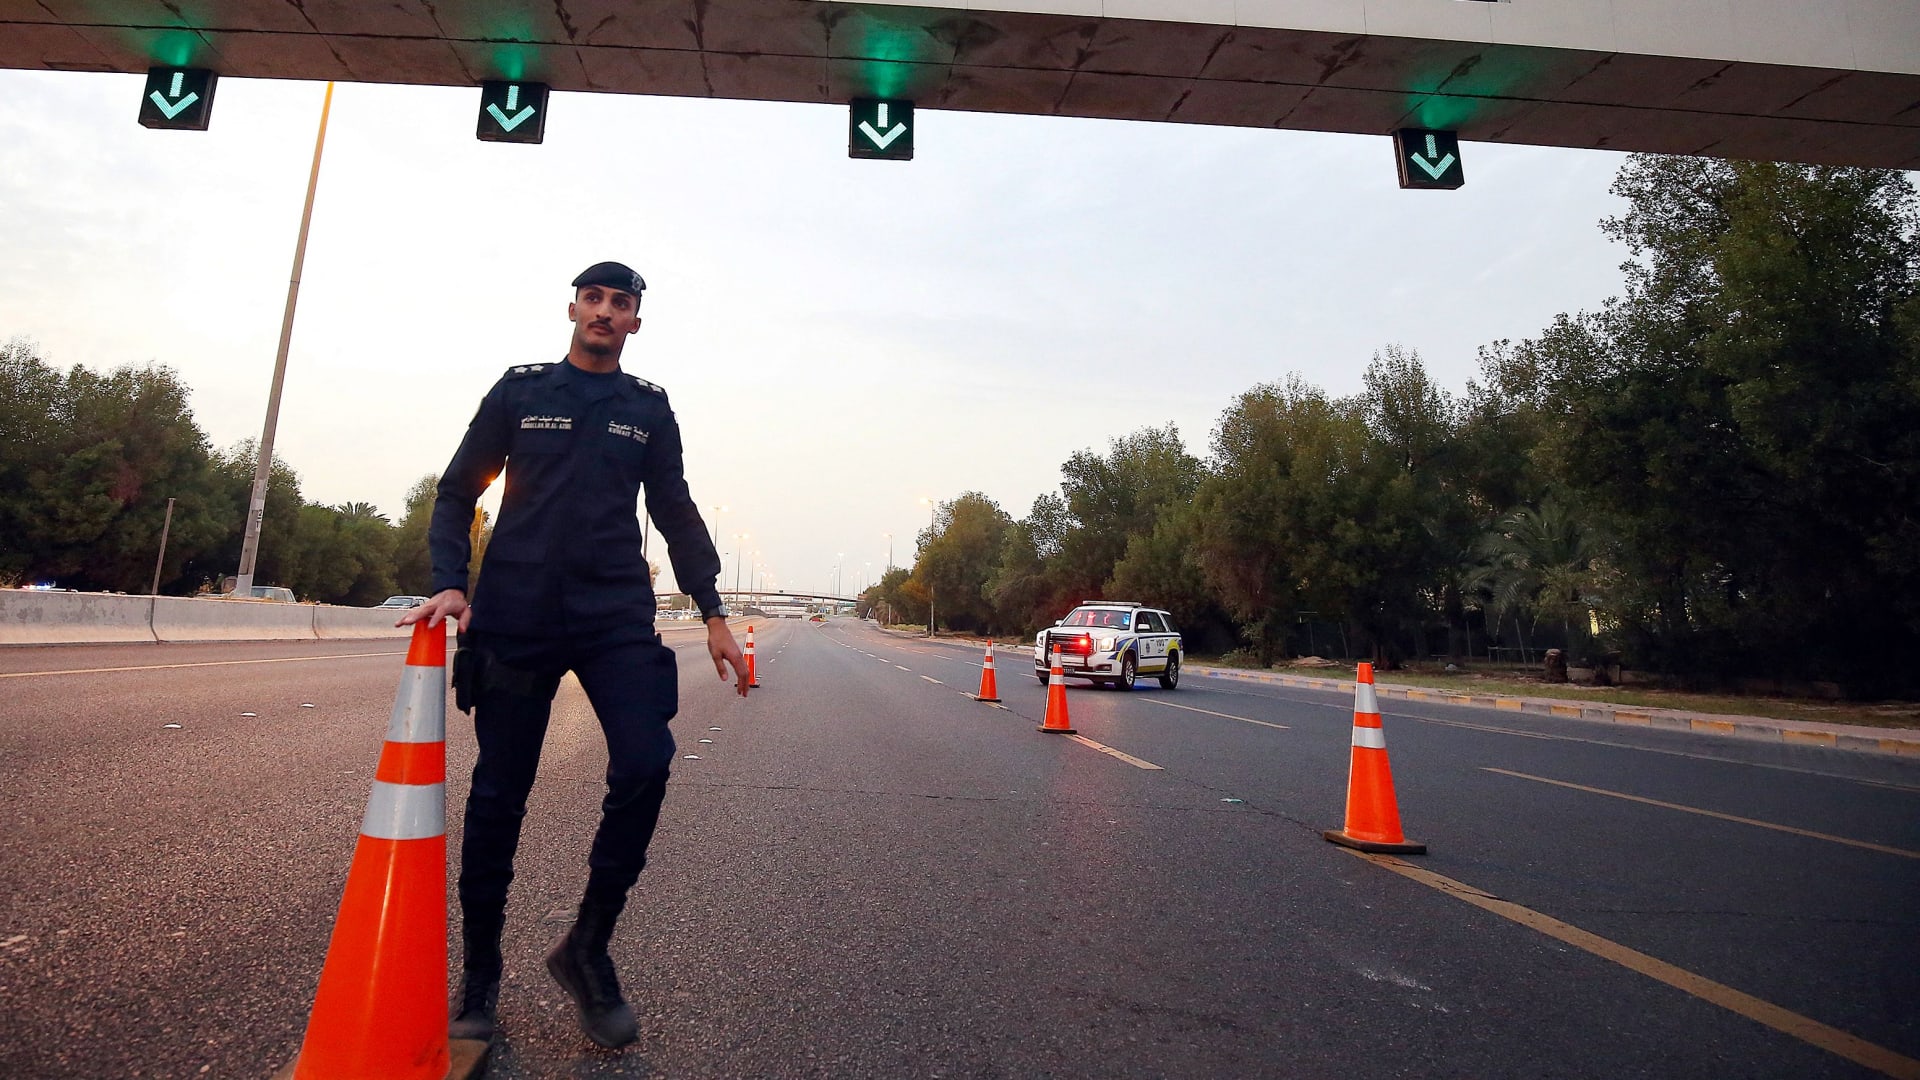 الكويت: دهس 15 شخصا يمارسون ركوب الدراجات الهوائية و"هروب" المتسبب